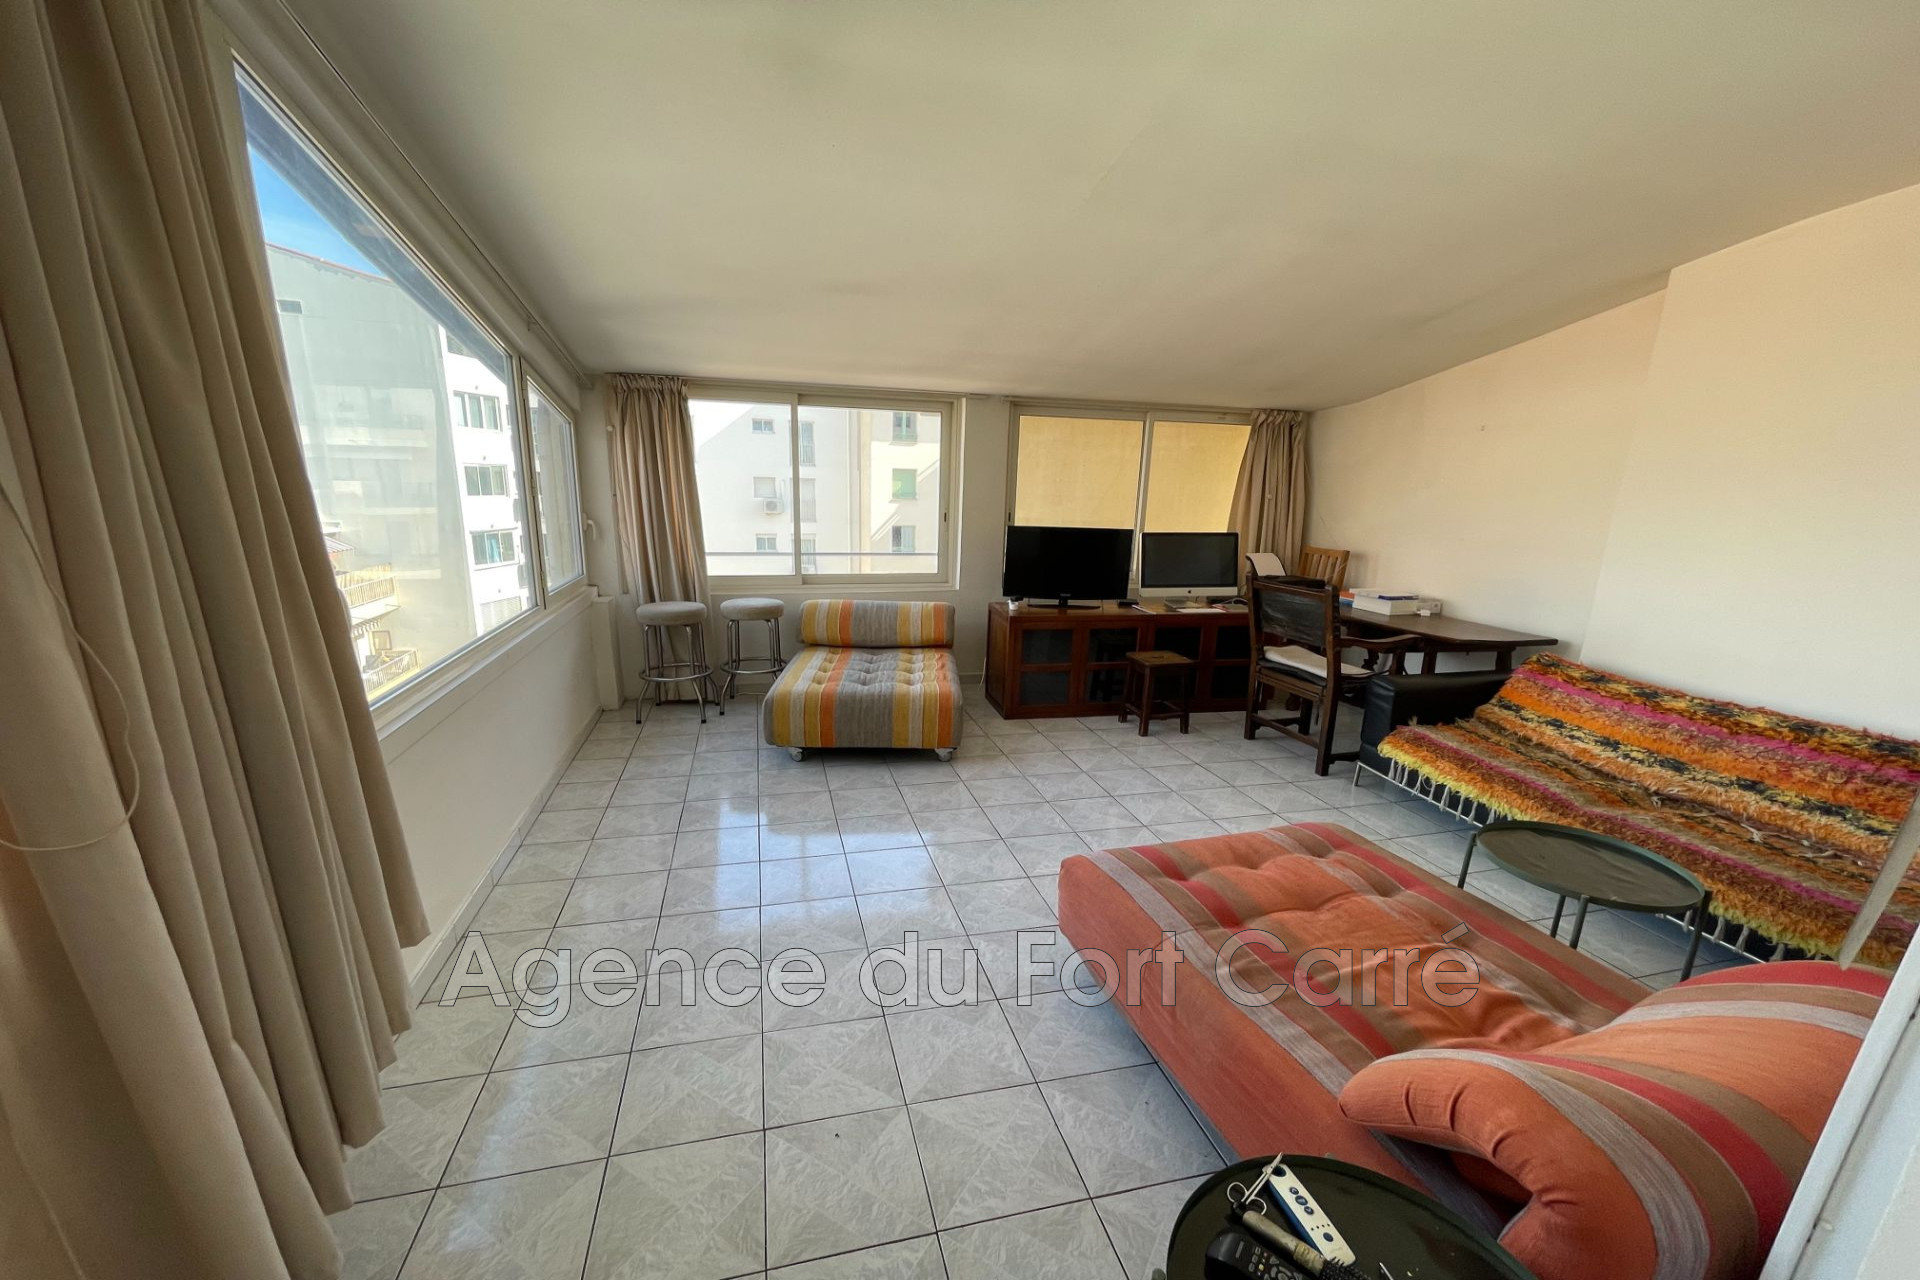 Vente Appartement 112m² 4 Pièces à Antibes (06600) - Agence Du Fort Carré